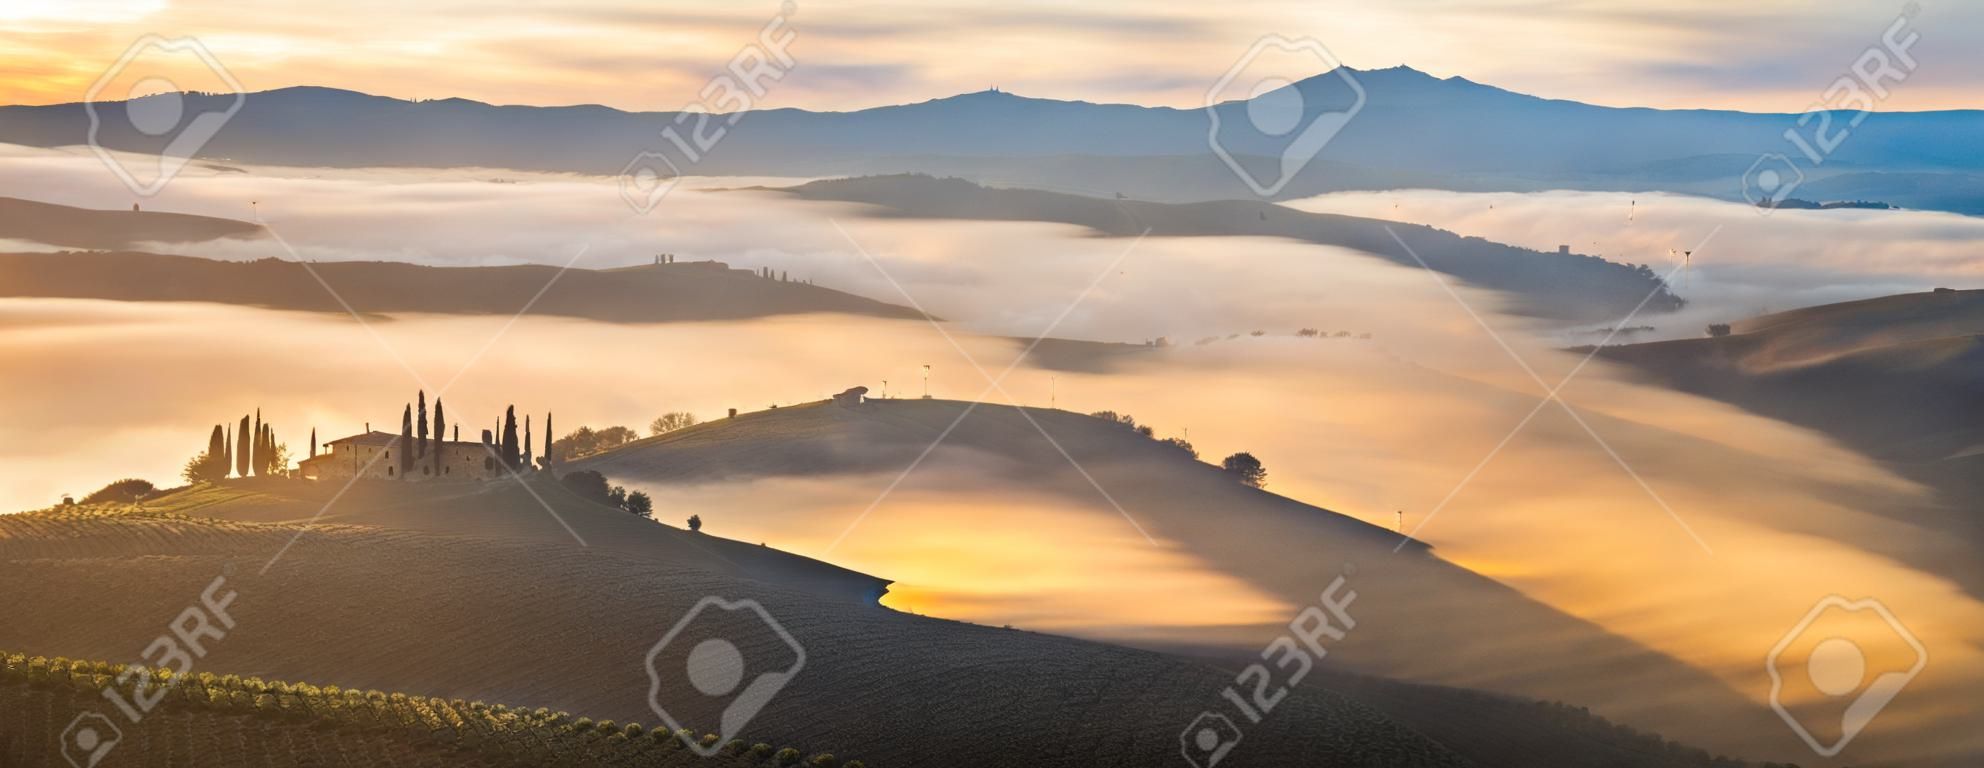 a famosa paisagem toscana ao nascer do sol